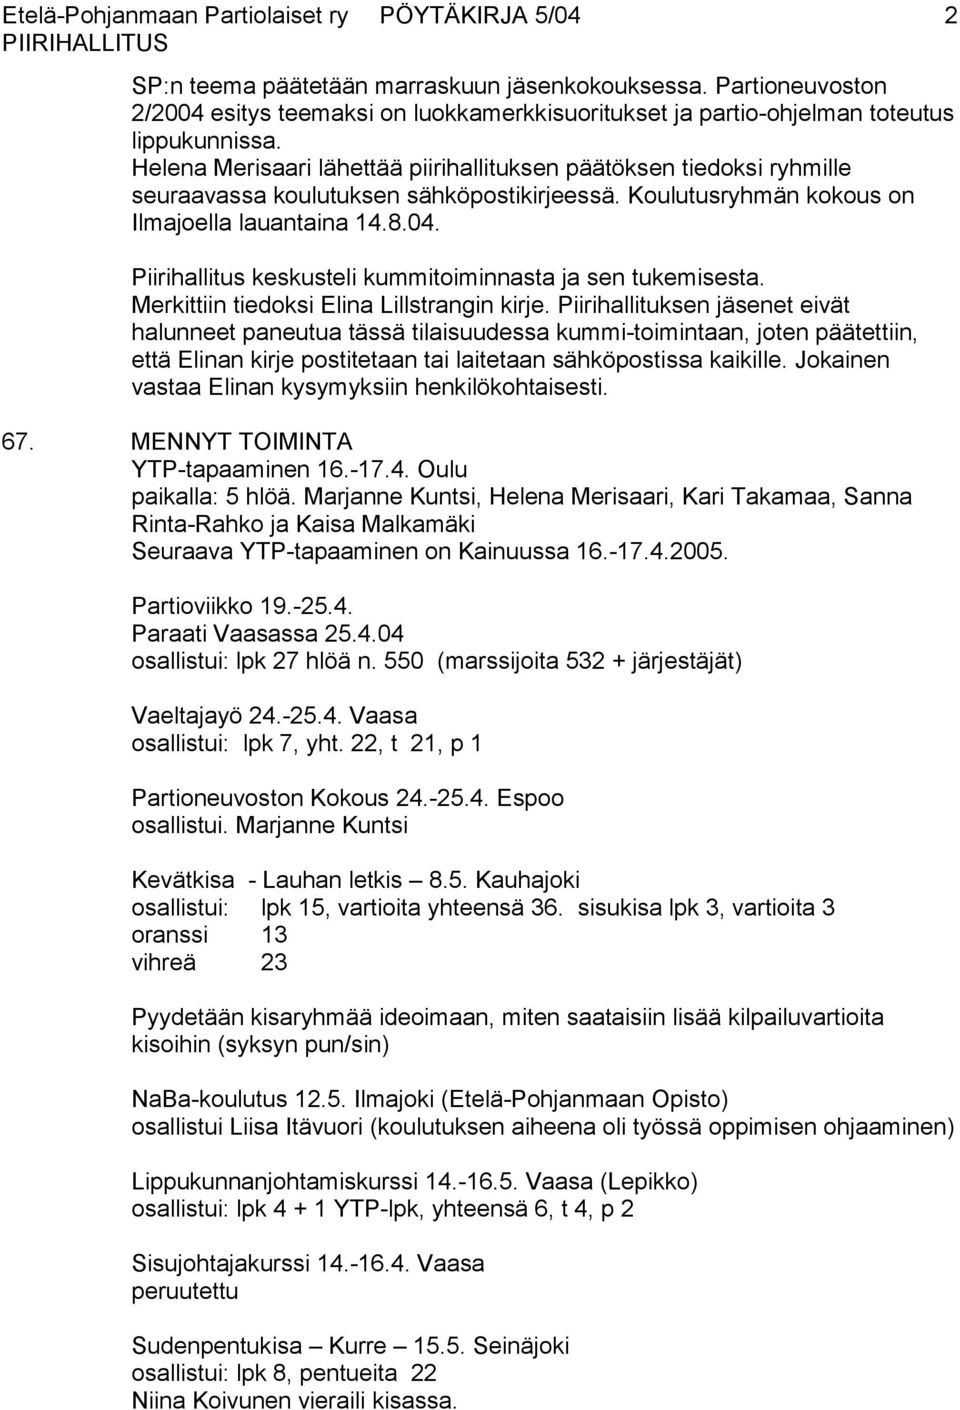 Helena Merisaari lähettää piirihallituksen päätöksen tiedoksi ryhmille seuraavassa koulutuksen sähköpostikirjeessä. Koulutusryhmän kokous on Ilmajoella lauantaina 14.8.04.